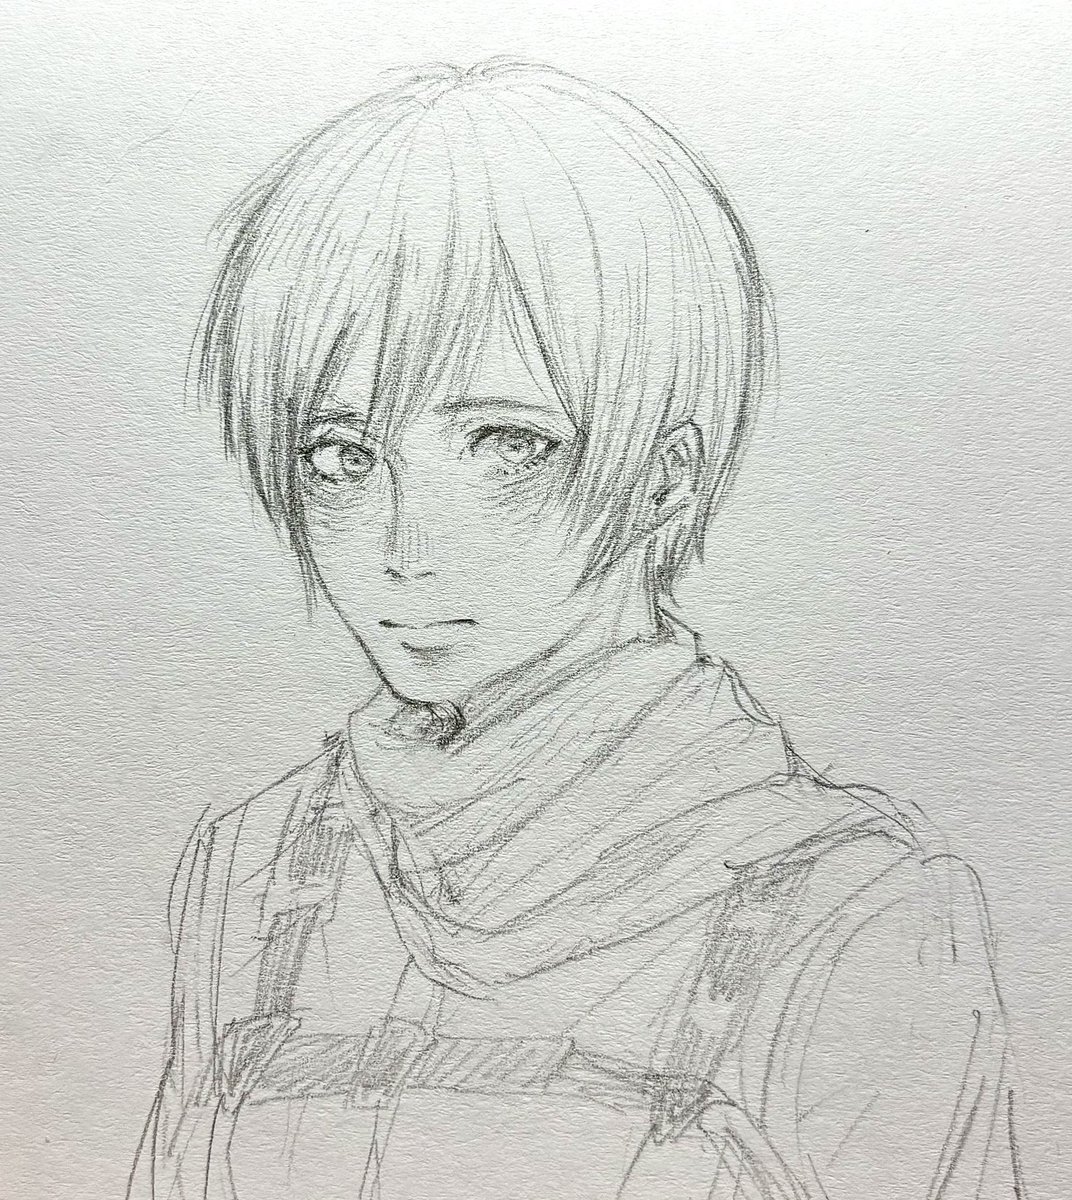 #MikasaAckerman 
#aot